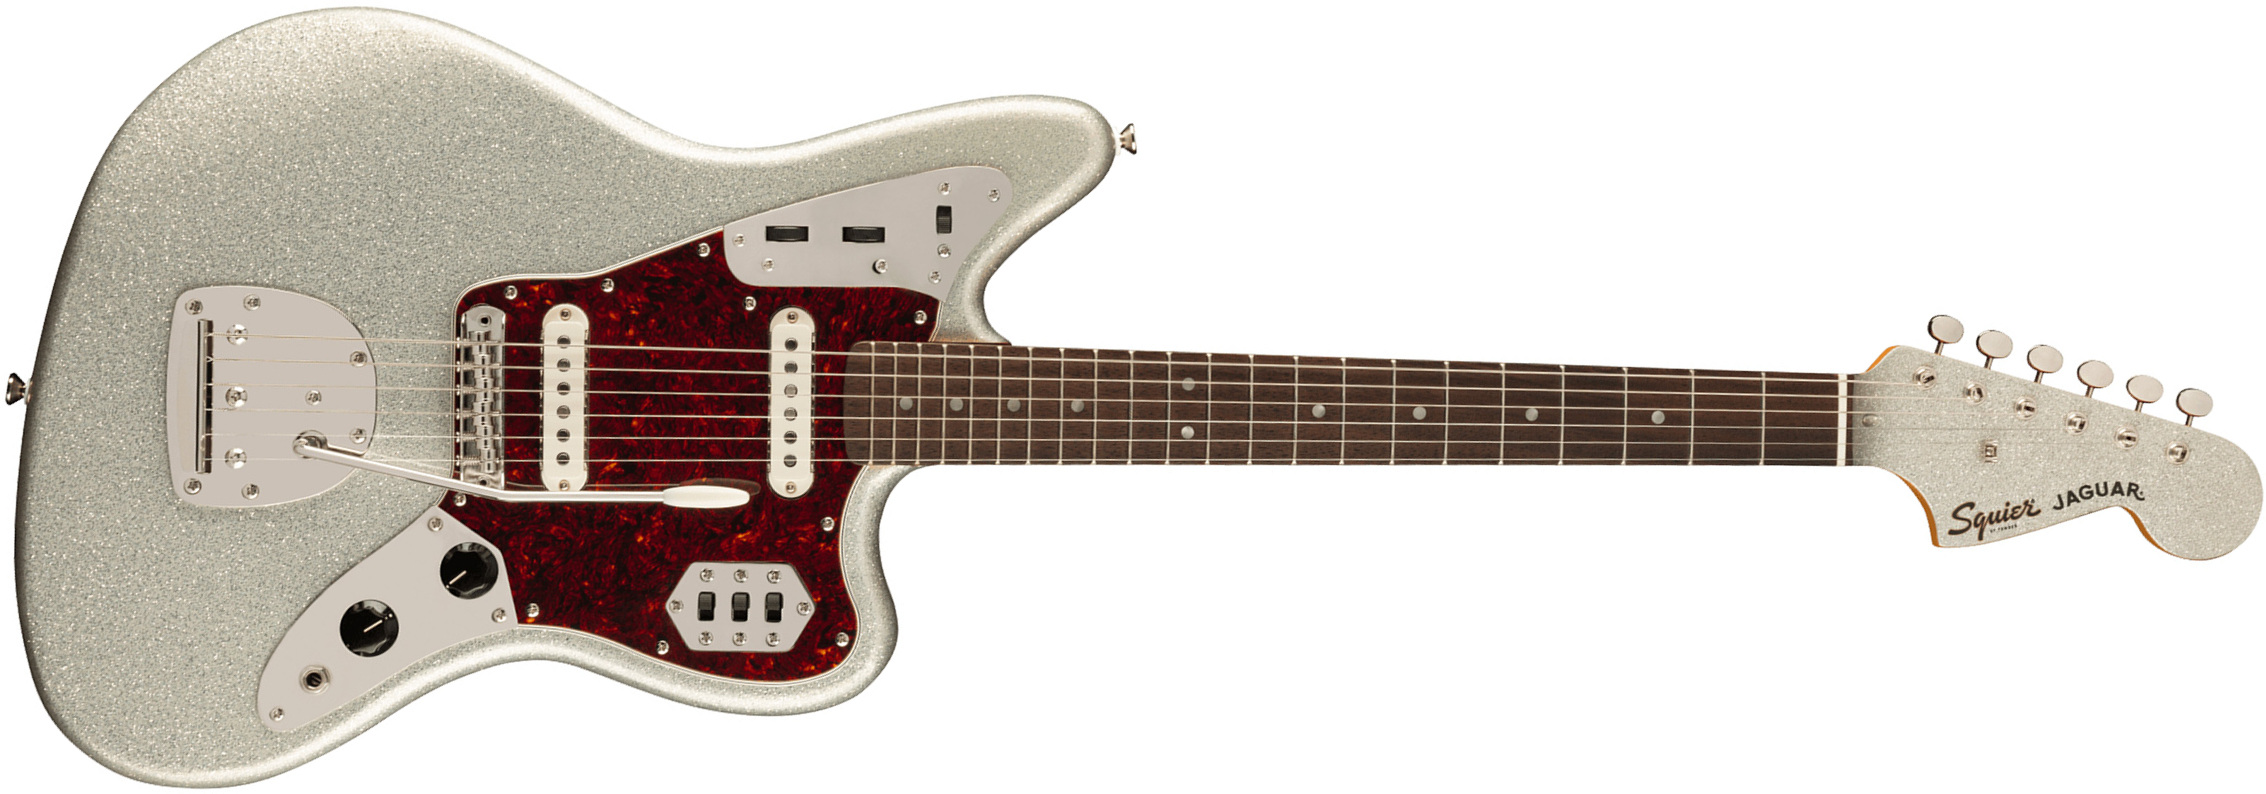 Squier Jaguar 60s Classic Vibe Fsr Ltd 2s Trem Lau - Silver Sparkle Matching Headstock - Guitarra electrica retro rock - Main picture